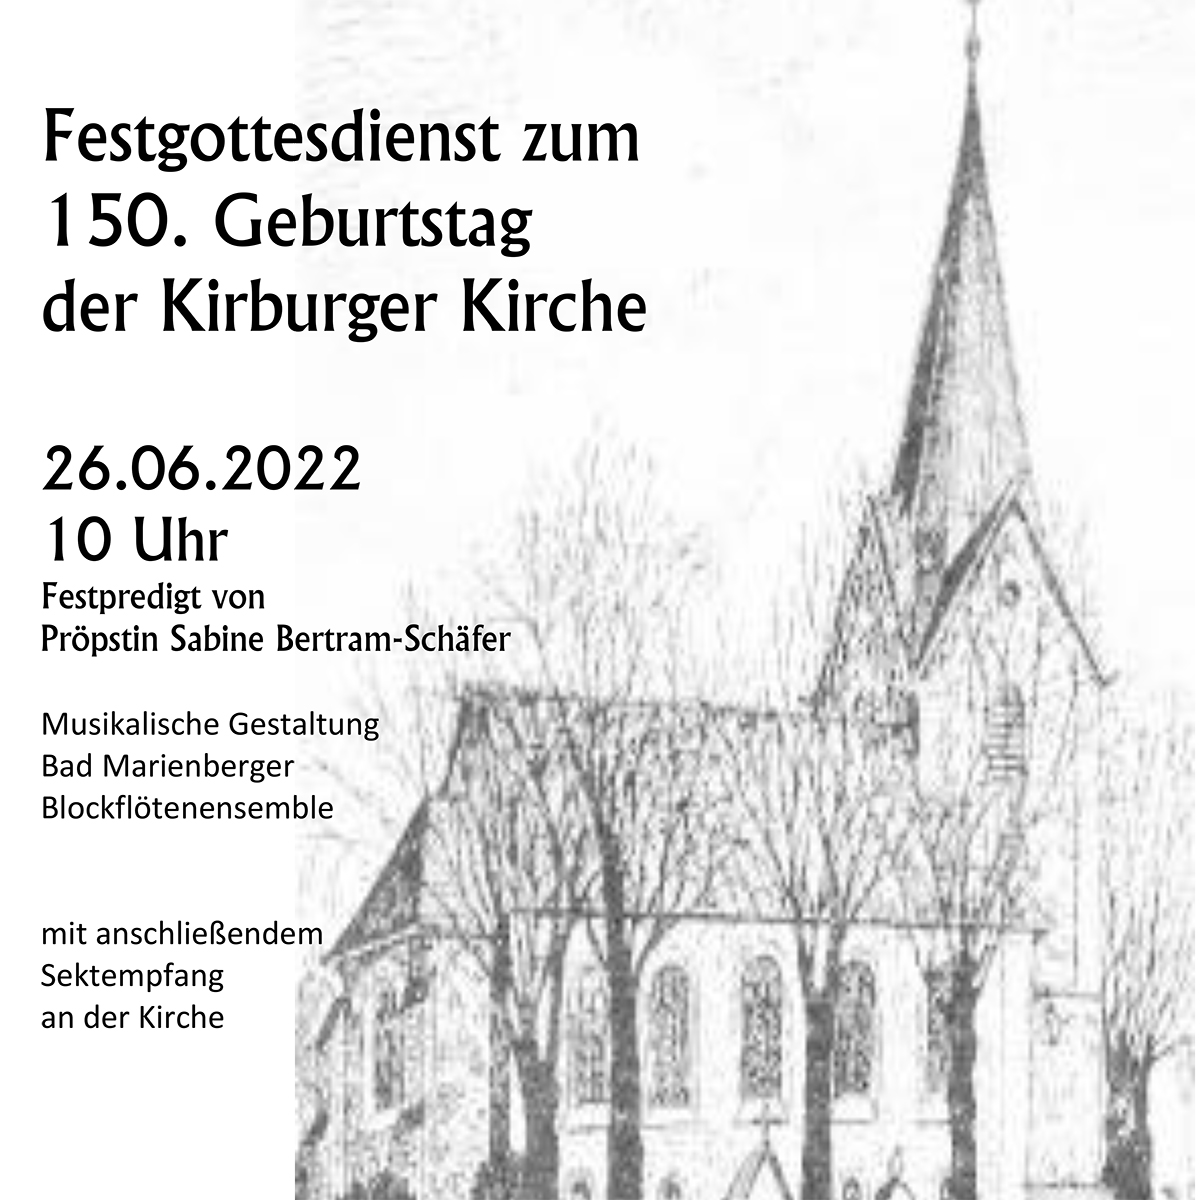 Jubiläumsgottesdienst in Kirburg: Pröpstin Sabine Bertram-Schäfer predigt